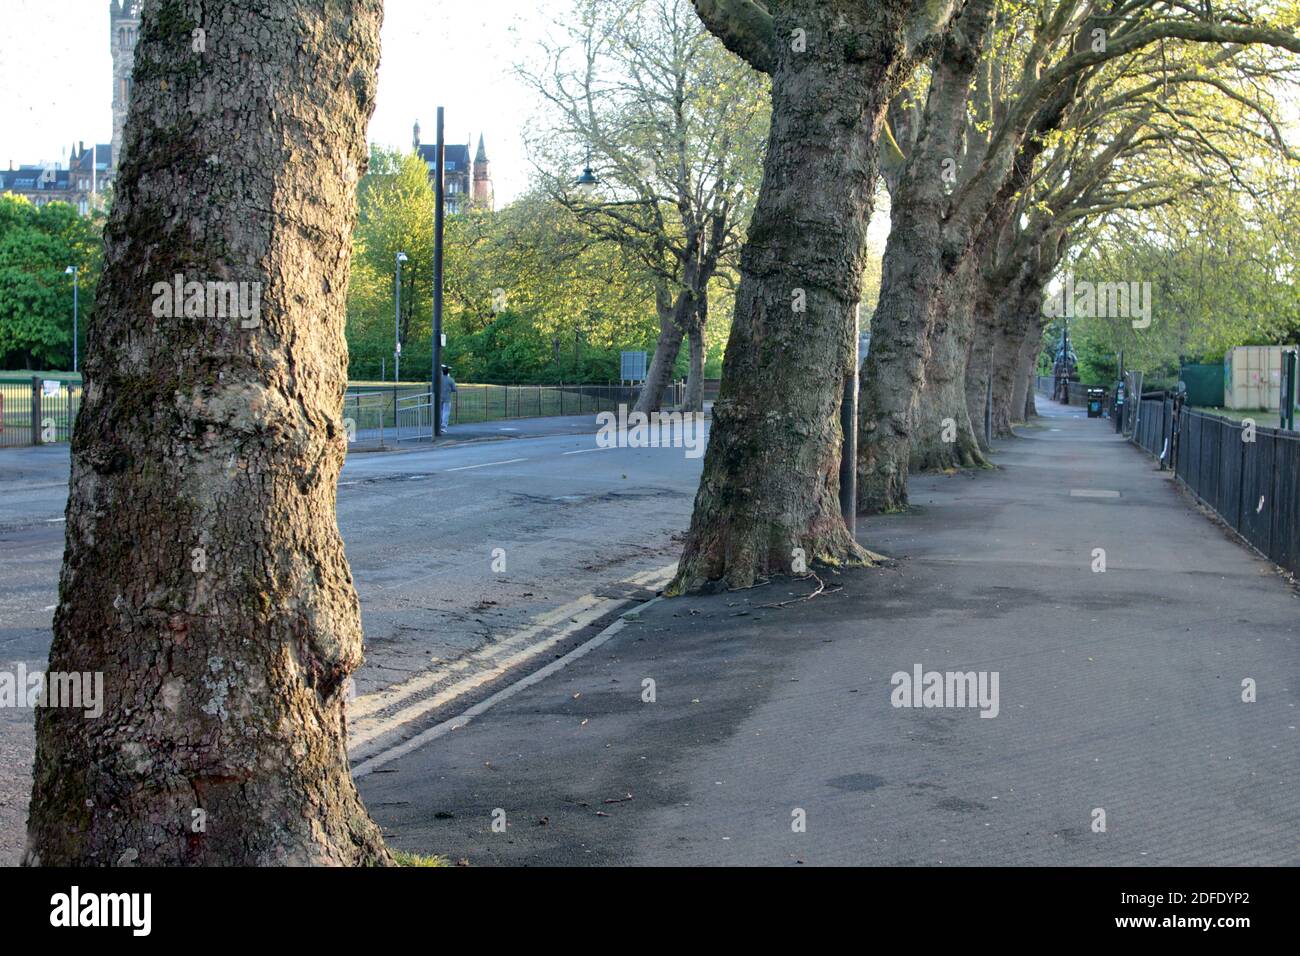 La linea di grandi alberi Kelvinway che attraversa il parco Kelvingrove a Glasgow. Gli alberi crescono attraverso il marciapiede, ed è una piacevole passeggiata in estate. C'è un limite di velocità ridotto e Kelvinway è normalmente in corsa con le persone che cercano i piaceri del parco Kelvingrove. La passeggiata attraversa il fiume Kelvin! ALAN WYLIE/ALAMY © Foto Stock